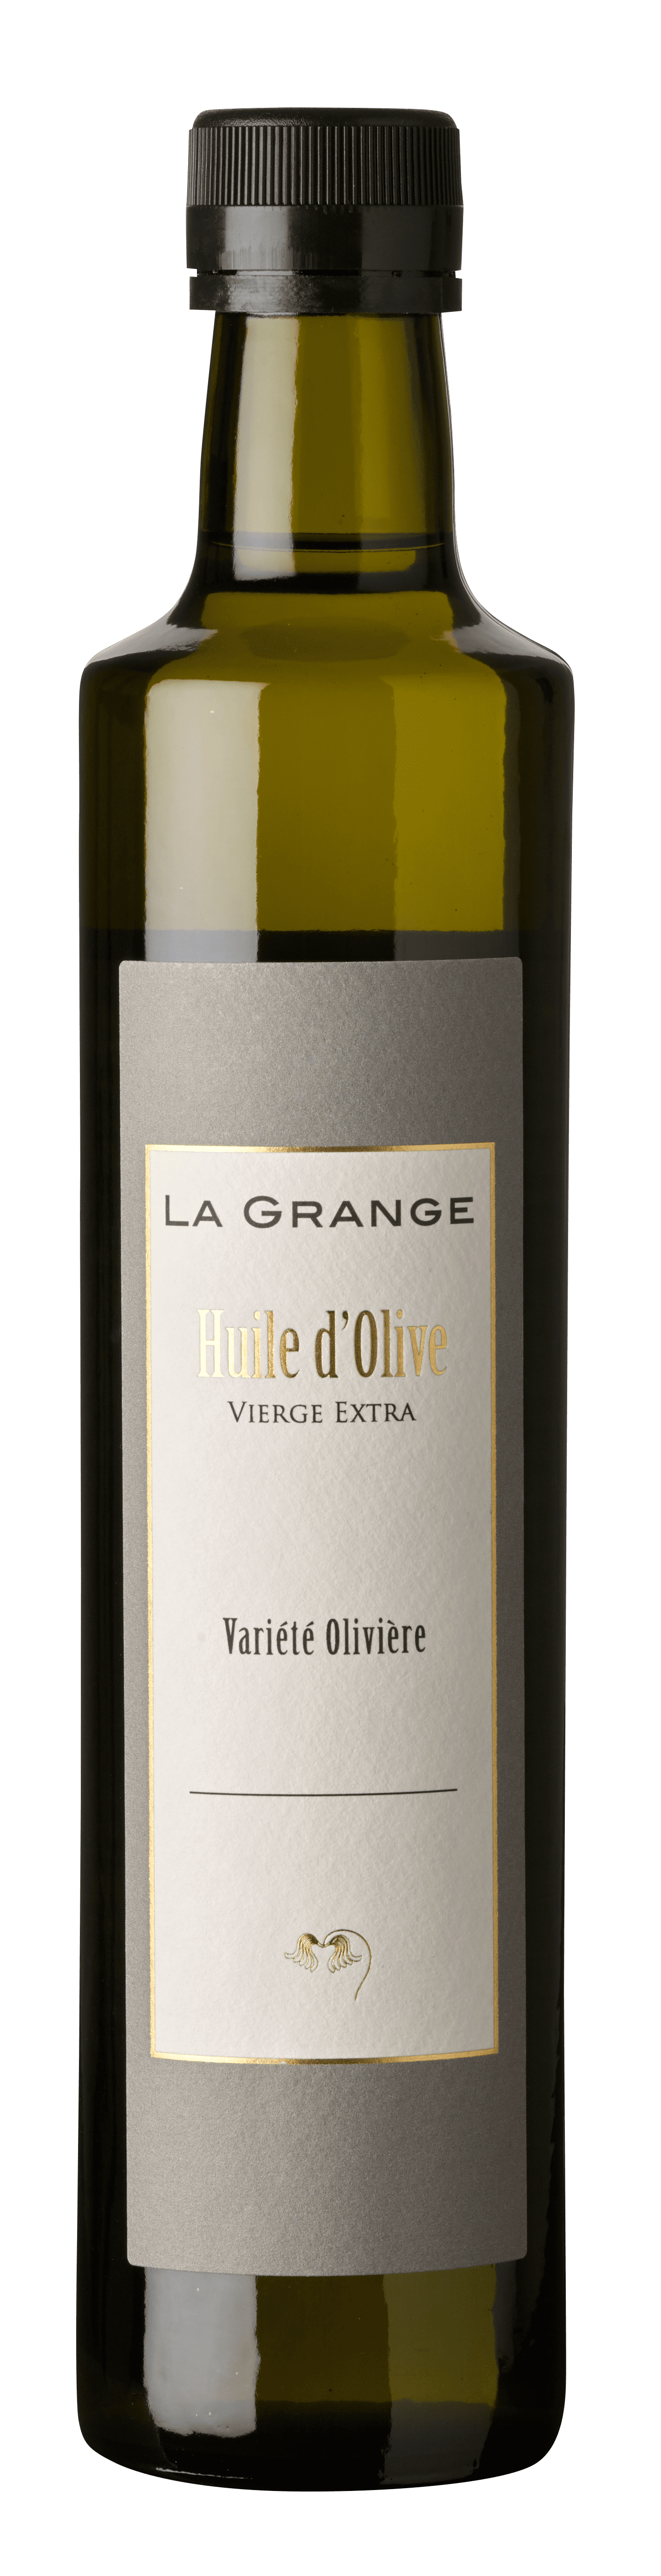 La Grange Variété Olivière Huile d'Olive Vierge Extra 0